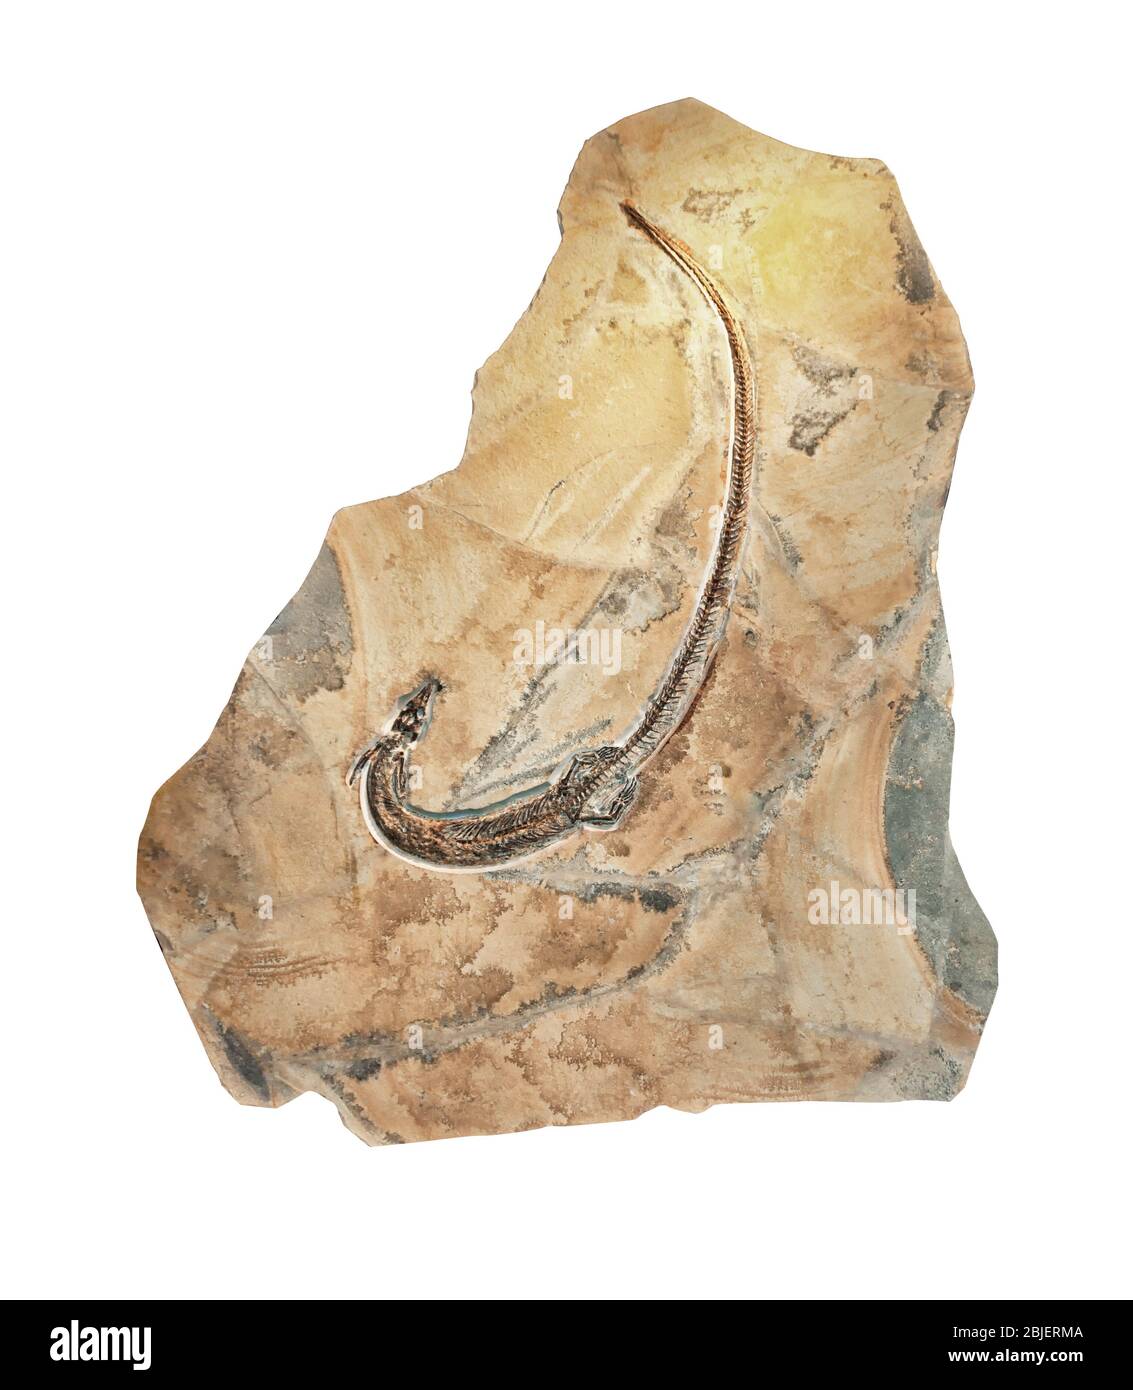 Pleurosaurus Goldfussi fósil, primo de la tuatara, relacionado con lagartos, del Jurásico Superior. Aislado sobre fondo blanco. Foto de stock